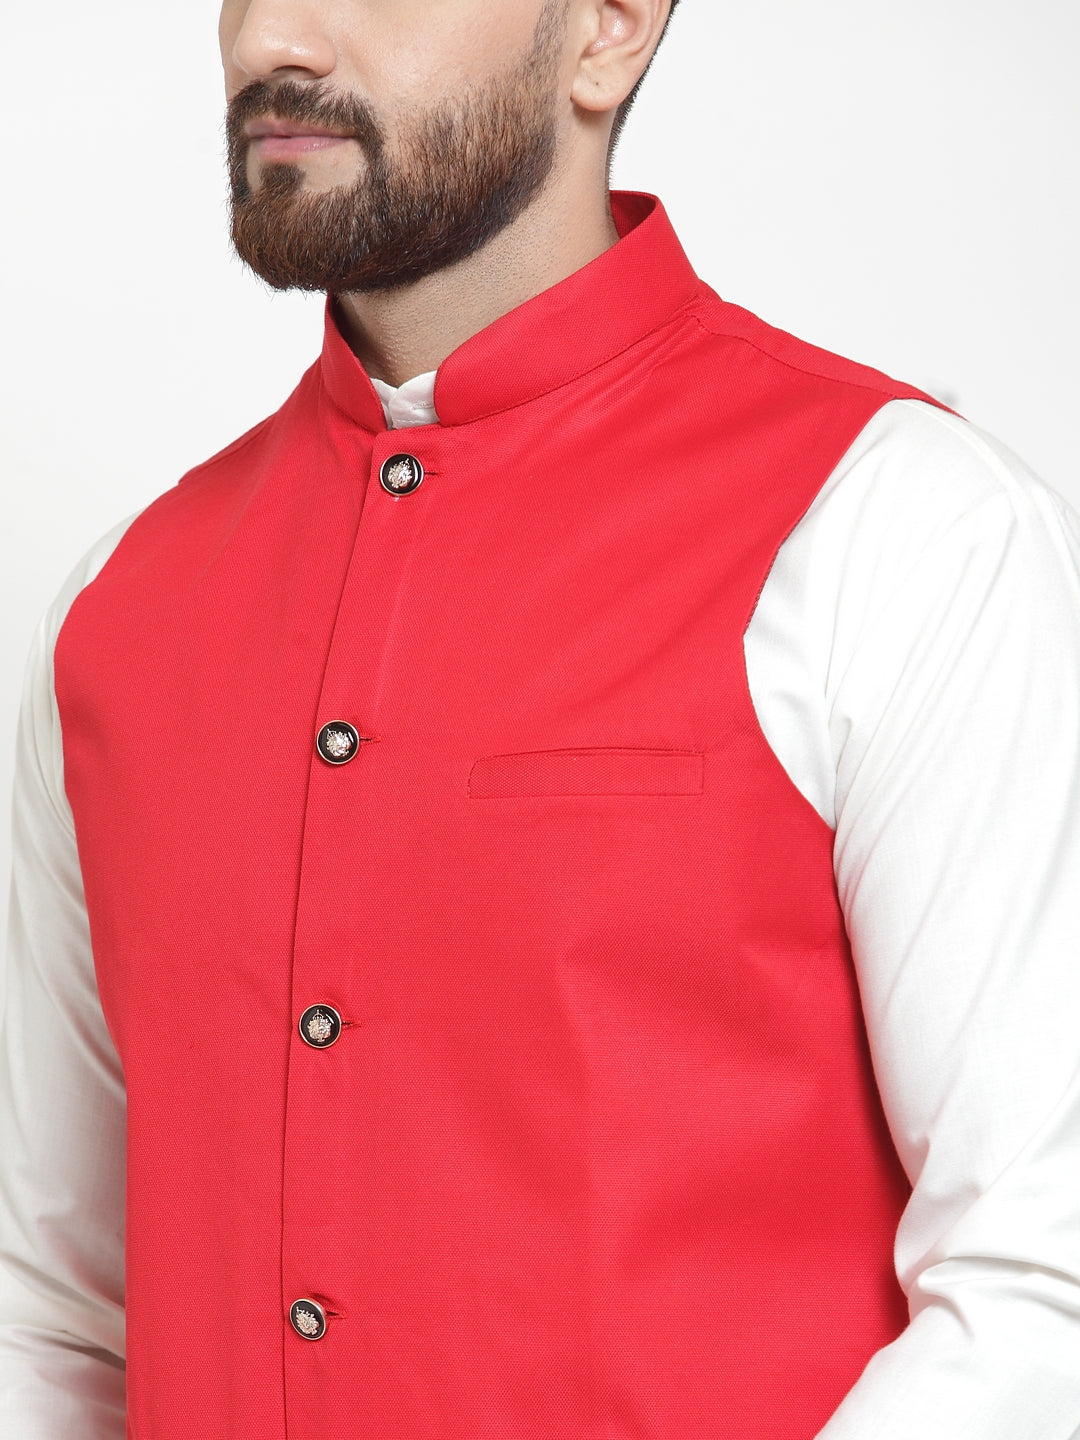 Jompers Men's Solid Kurta Pajama with Solid Waistcoat (Red) - Distacart